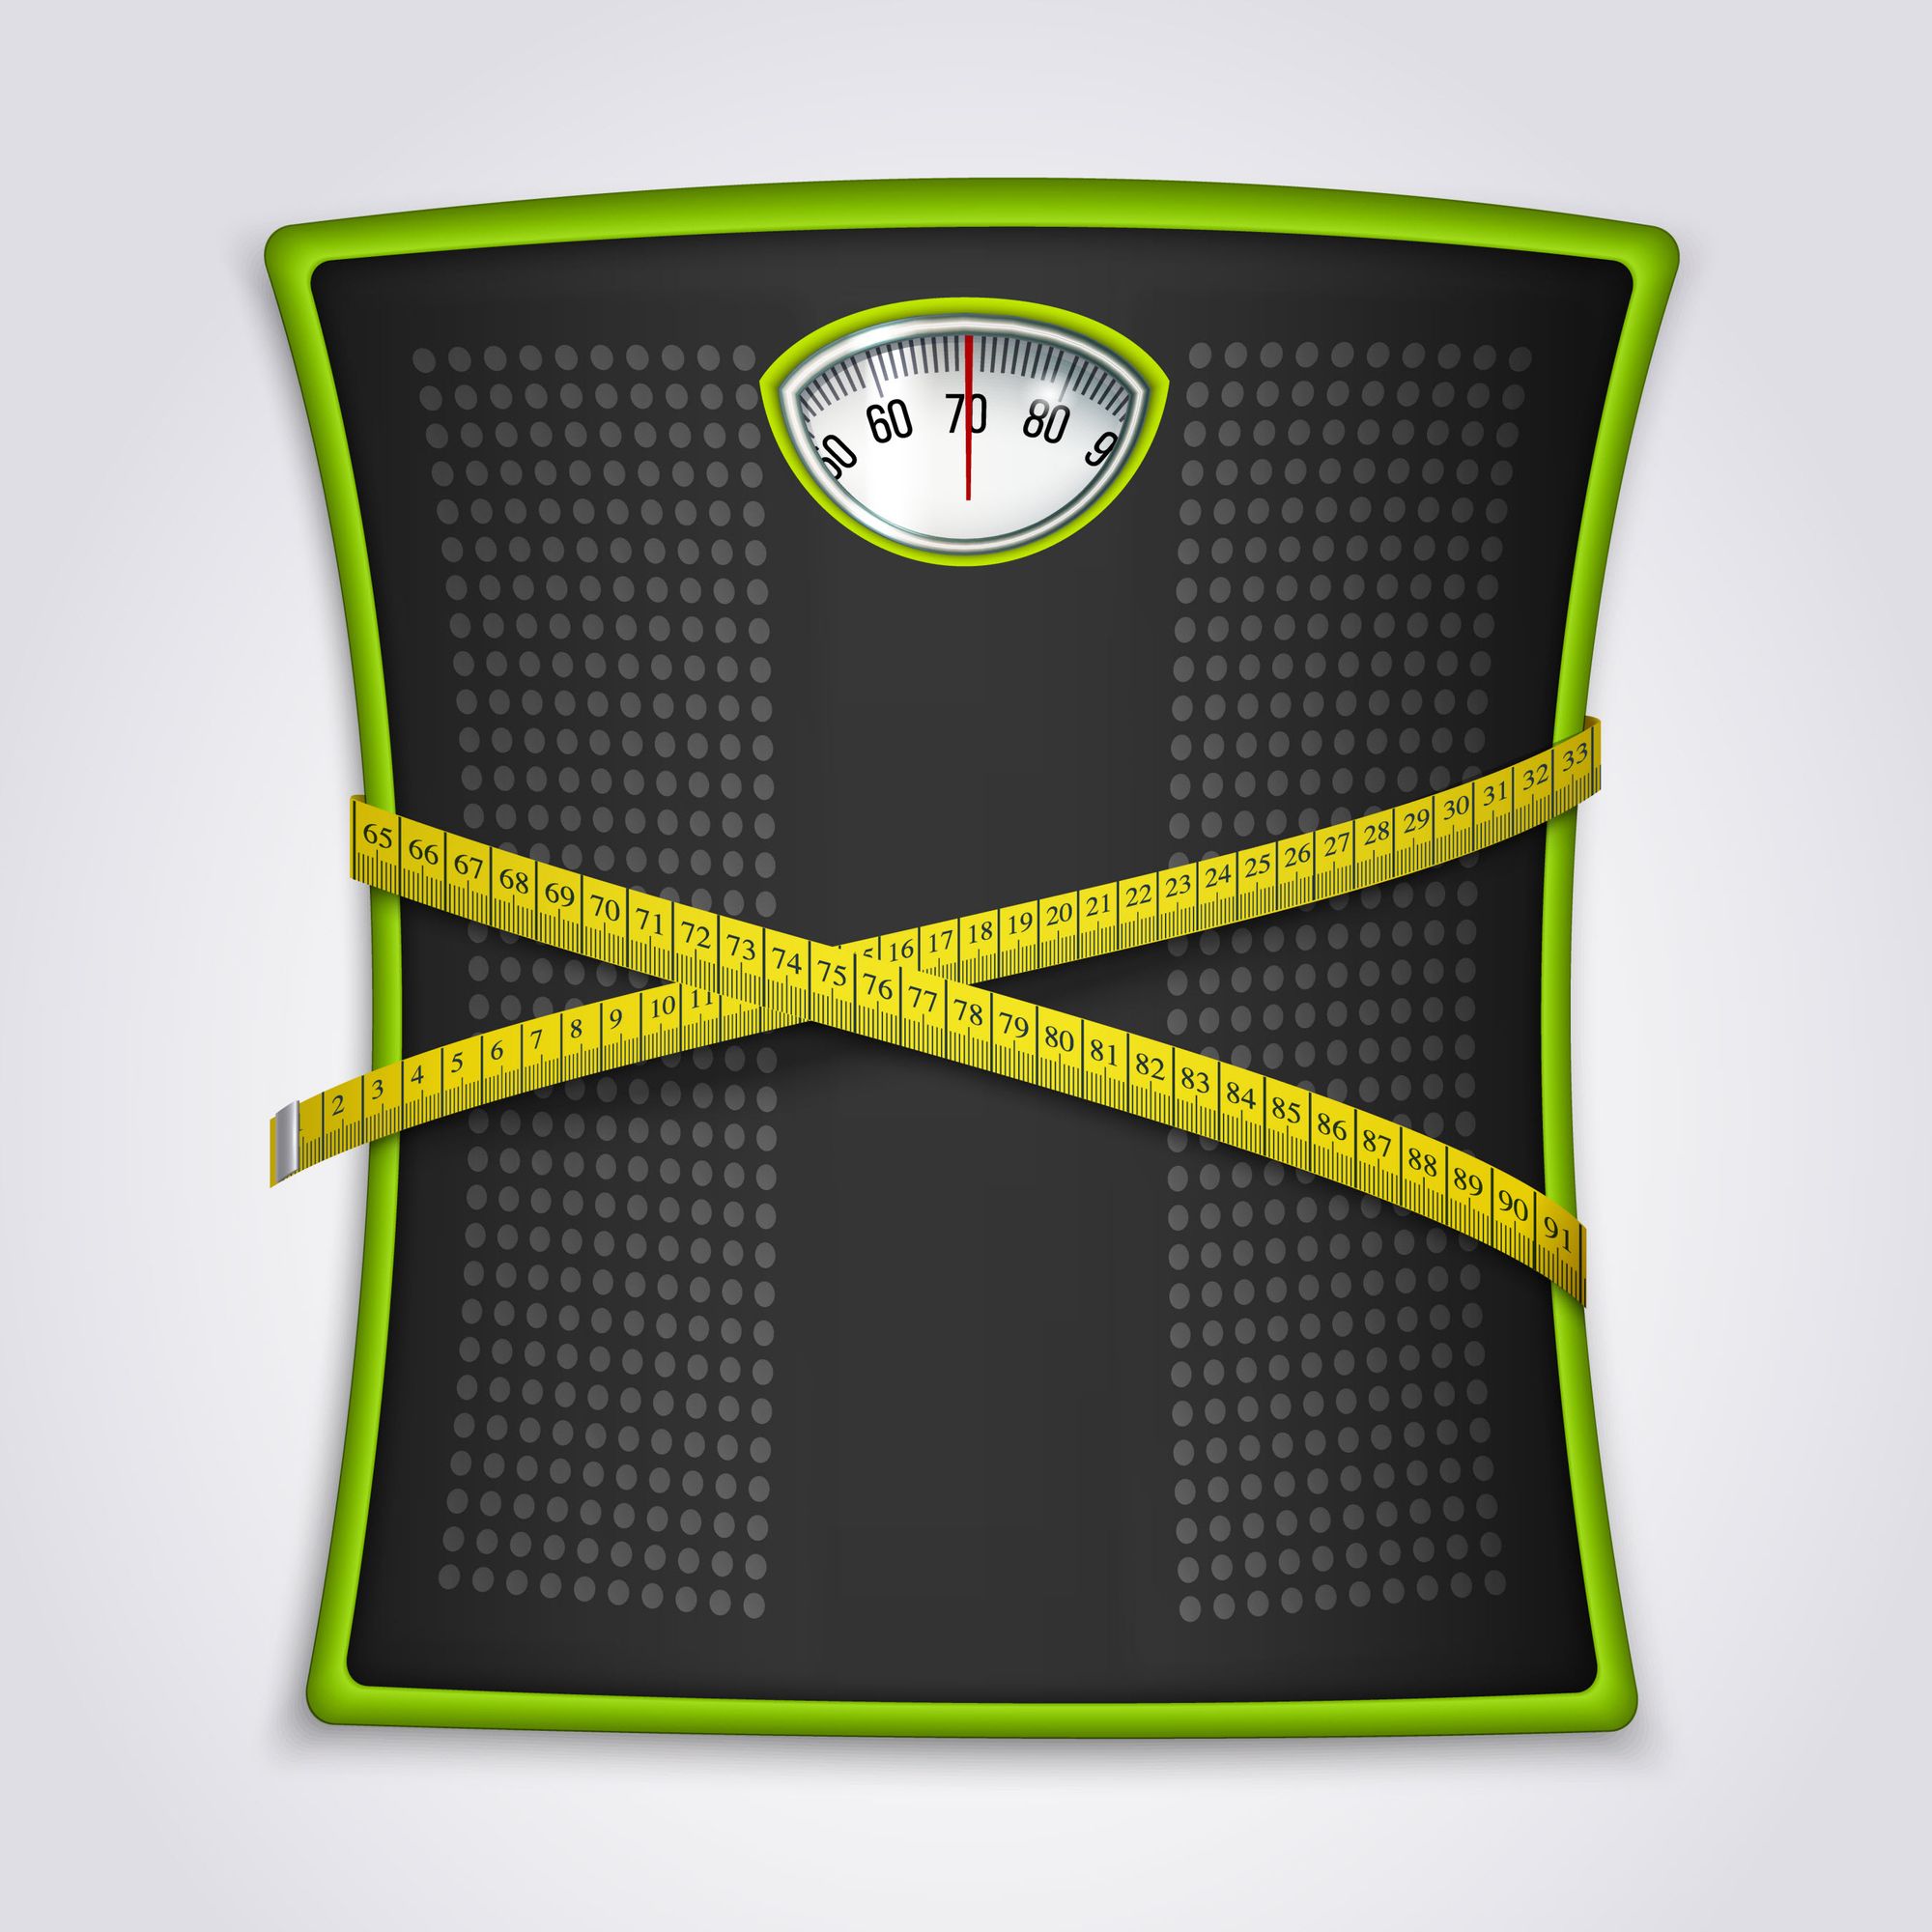 น้ำหนักที่เราลดได้มีไขมันเป็นสัดส่วนกี่เปอร์เซ็นต์ ?